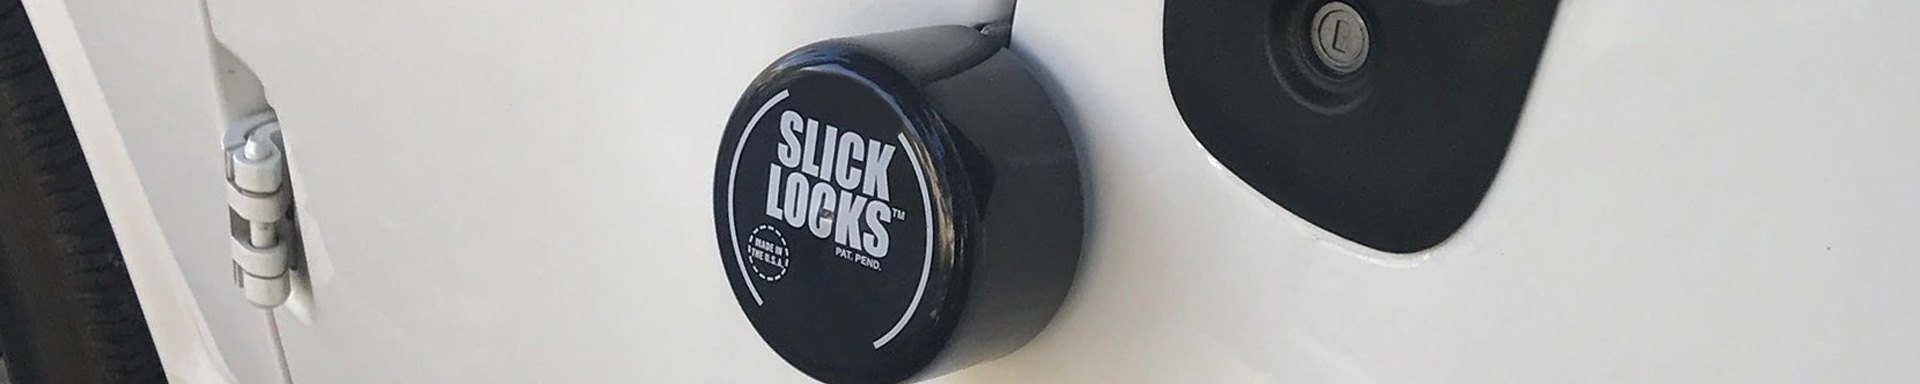 Slick Locks